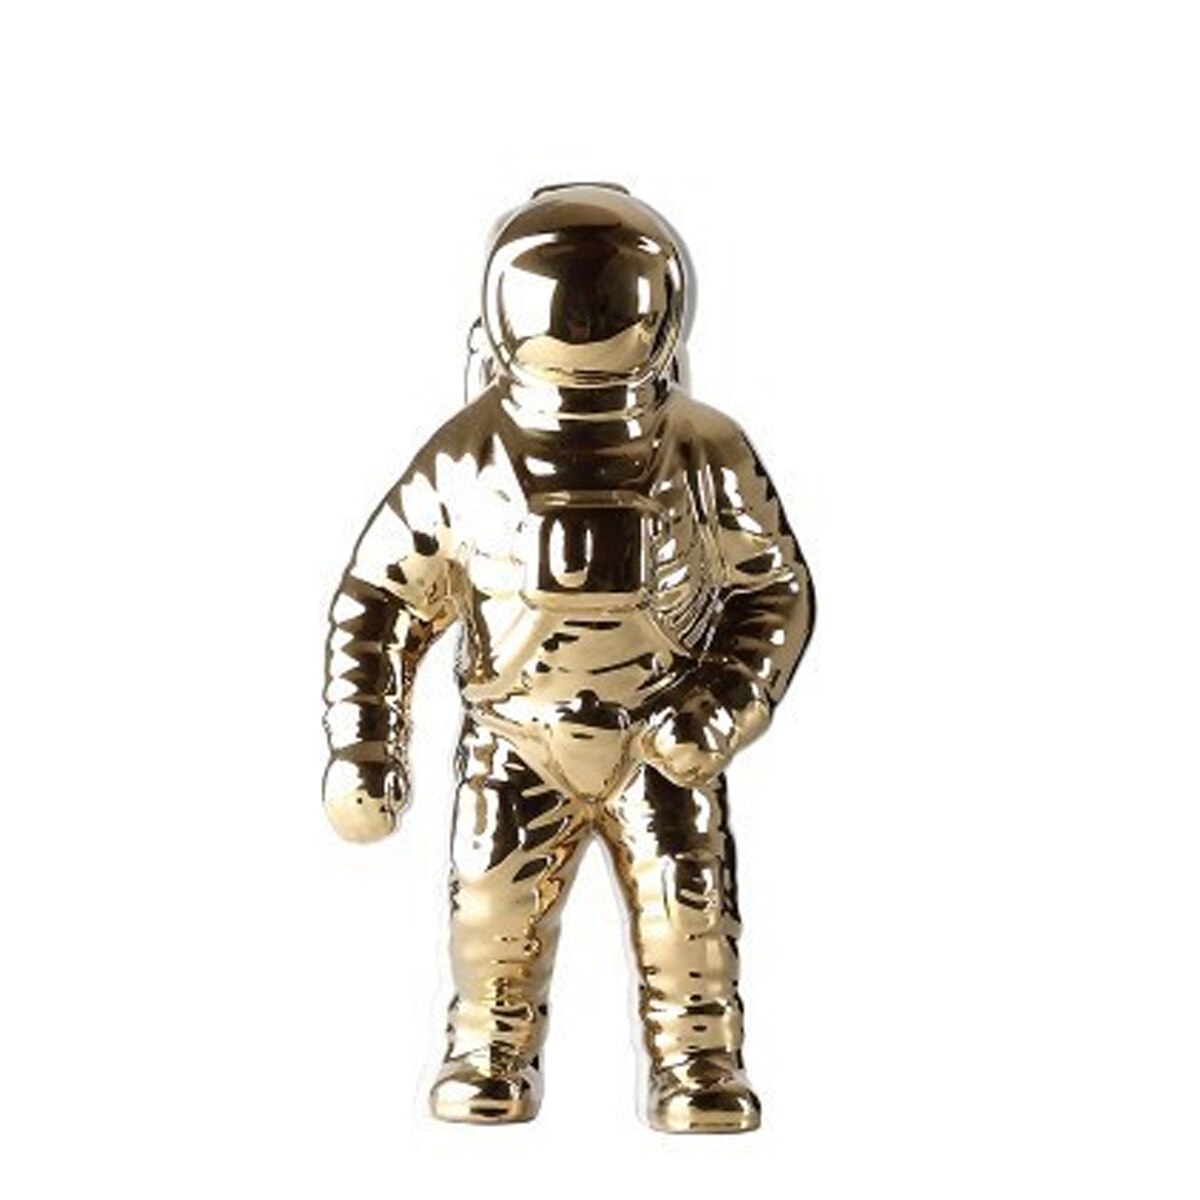 Gold Space Man Escultura Astronaut Vase de cerámica Creative Cosmonaut Cosmonaut Modelo Ornamento Estatua Jardín Decoración del hogar